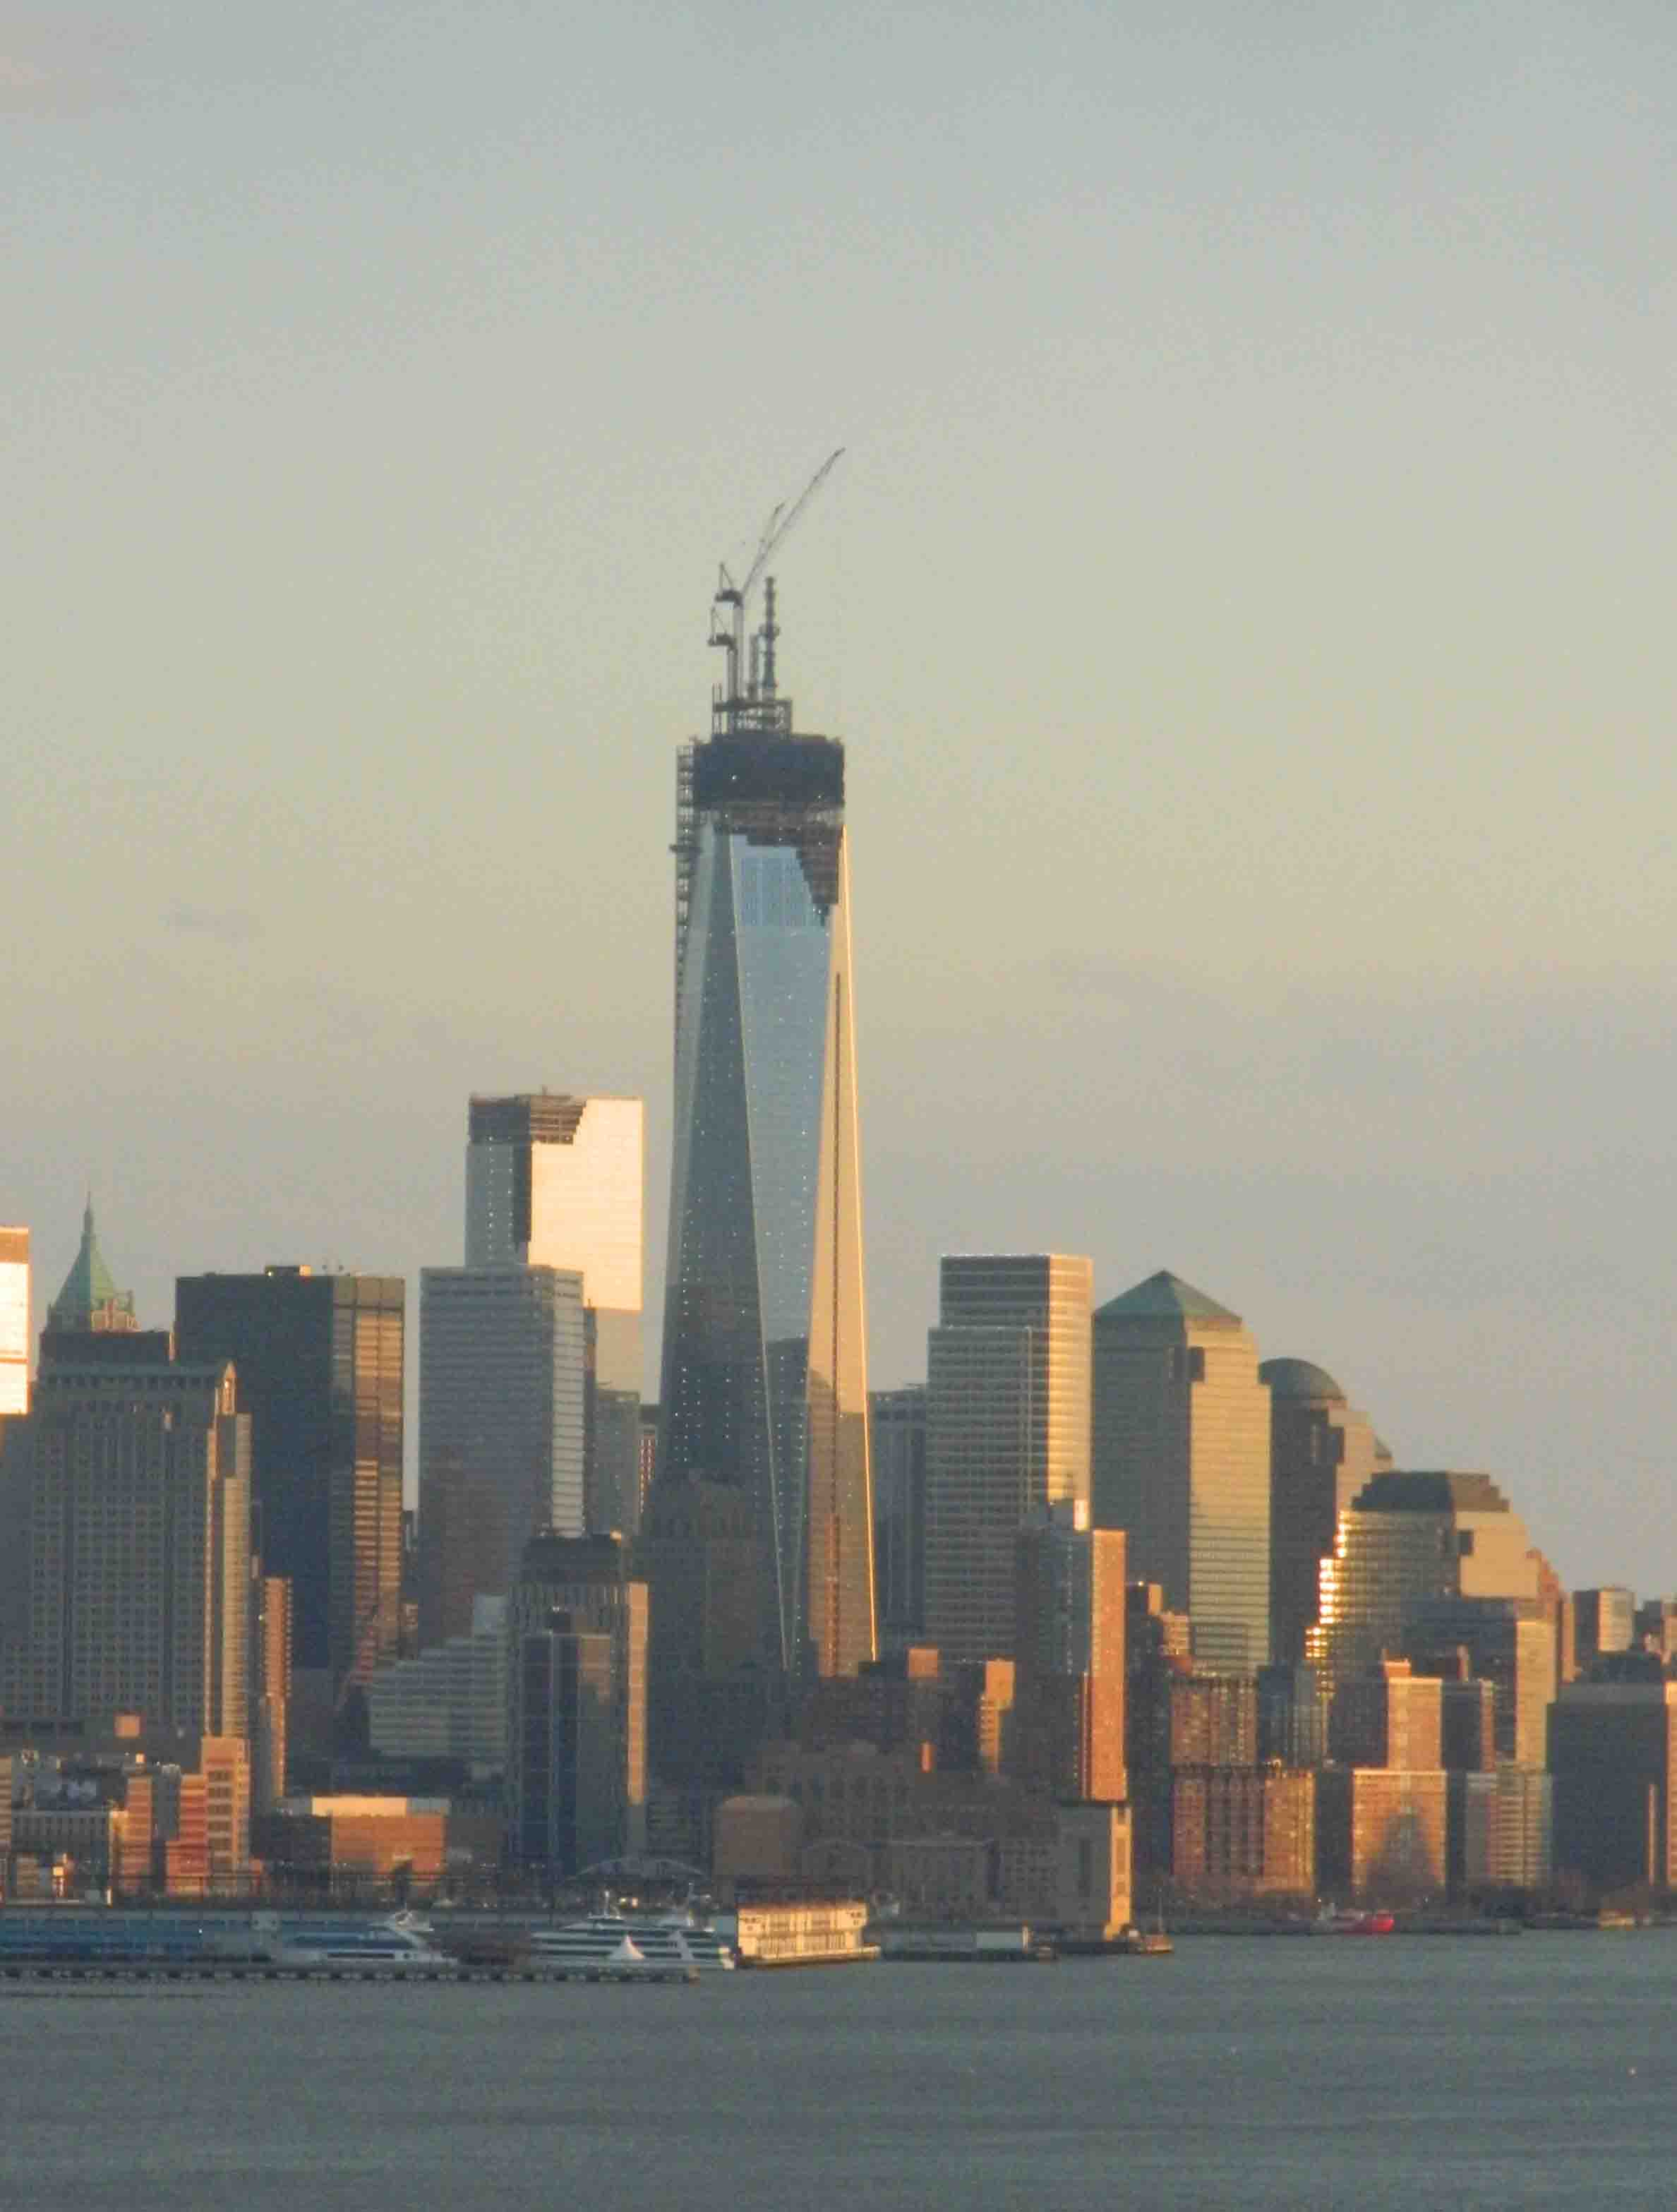 Vista de la Torre de la libertad que reemplaza a las Torres Gemelas destruidas en los atentados terroristas del 11 de septiembre de 2001 en Nueva York. Al atardecer la luz naranja se refleja en su estructura (Foto Nueva York Digital)